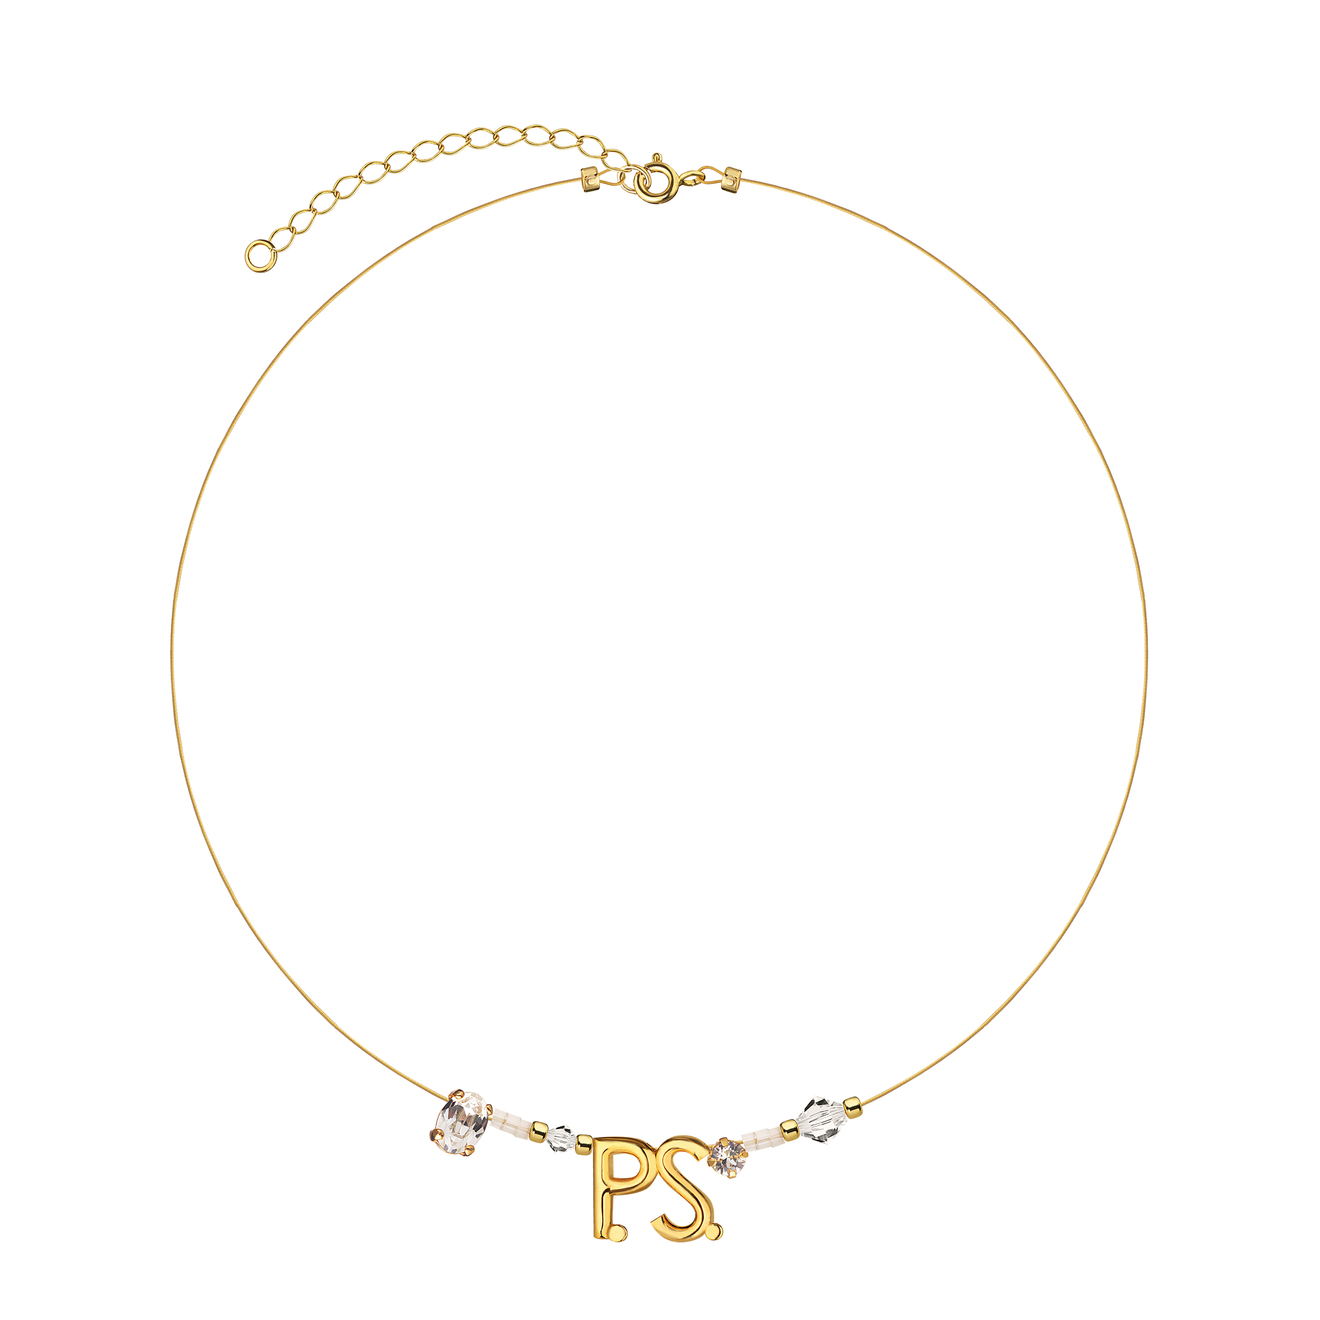 Phenomenal Studio Позолоченный чокер с фирменным логотипом и кристаллами P.S. Mini Gold Necklace колье phenomenal studio love necklace 1 шт